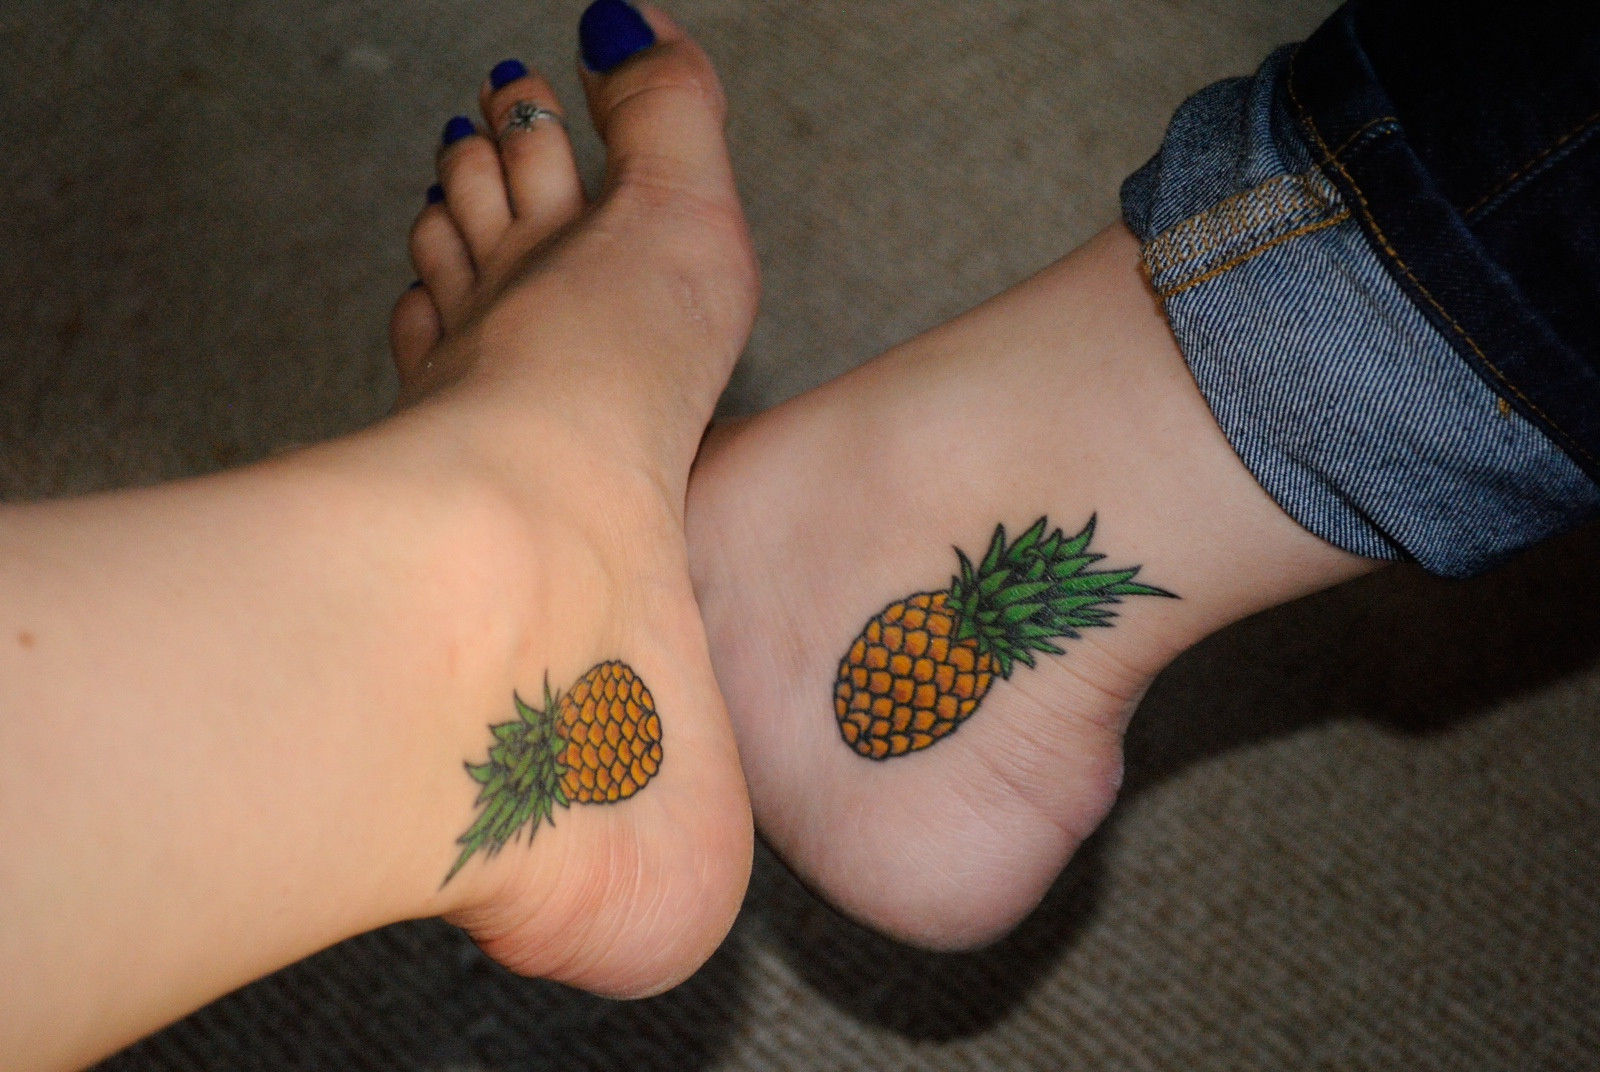 Sadne tetovaže s tetovažami v ananasu na nogah, bratovske tetovaže